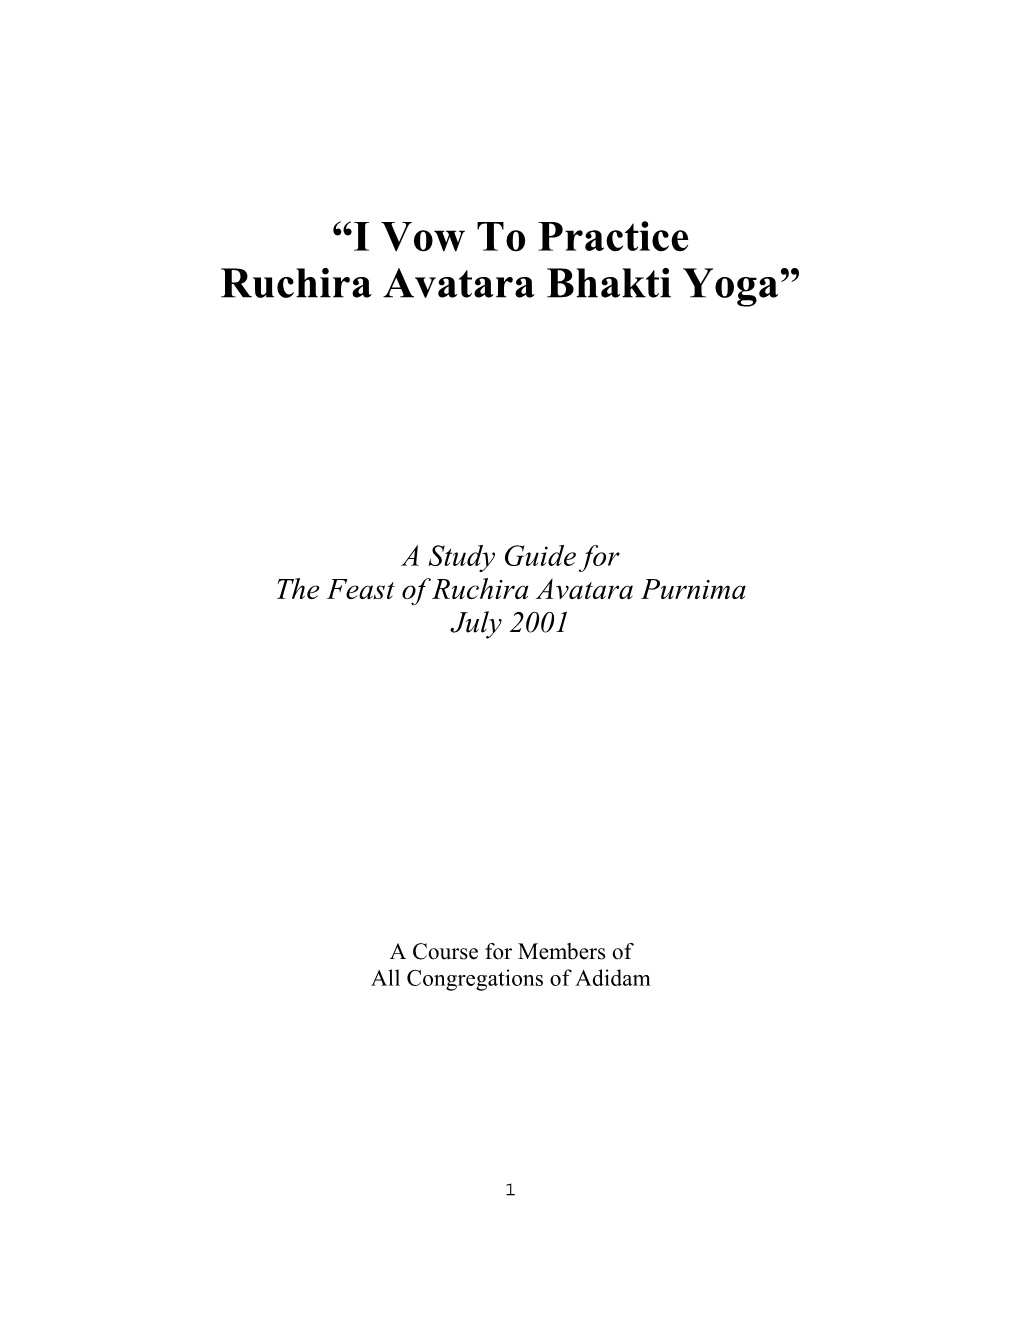 “I Vow to Practice Ruchira Avatara Bhakti Yoga”